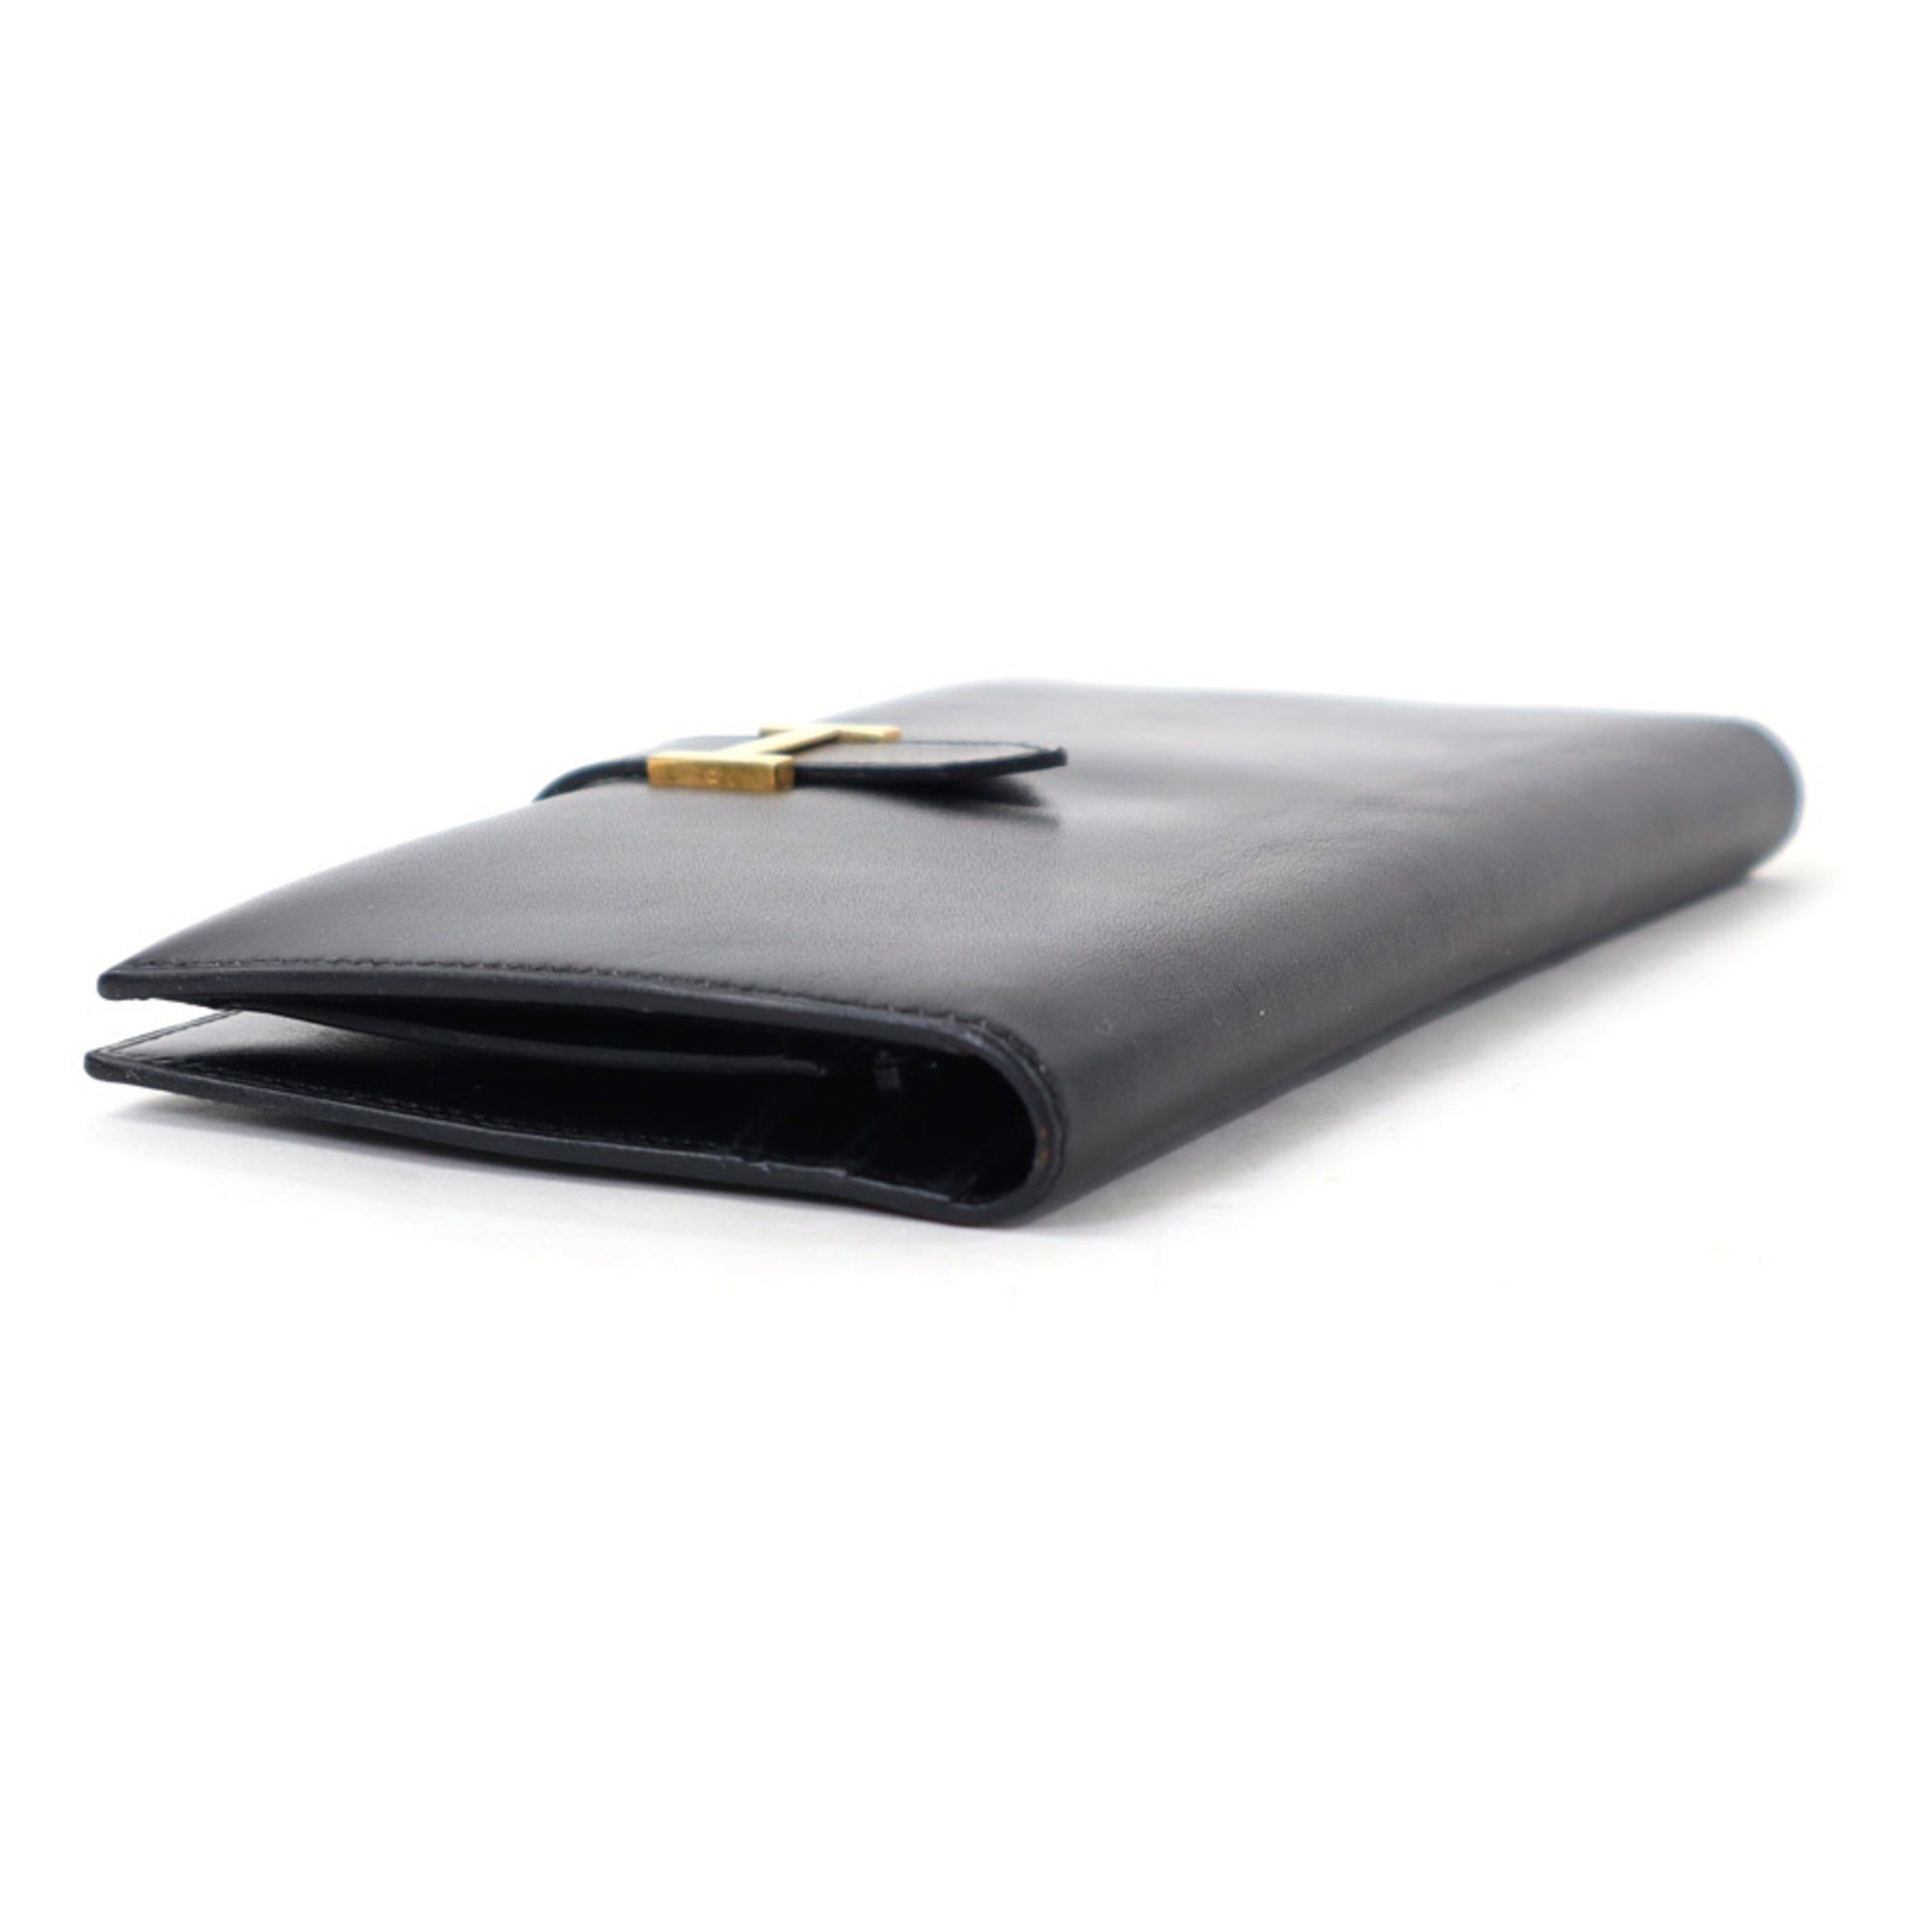 Hermès 8CC Bifold Wallet - Black Box Calfskin Leather